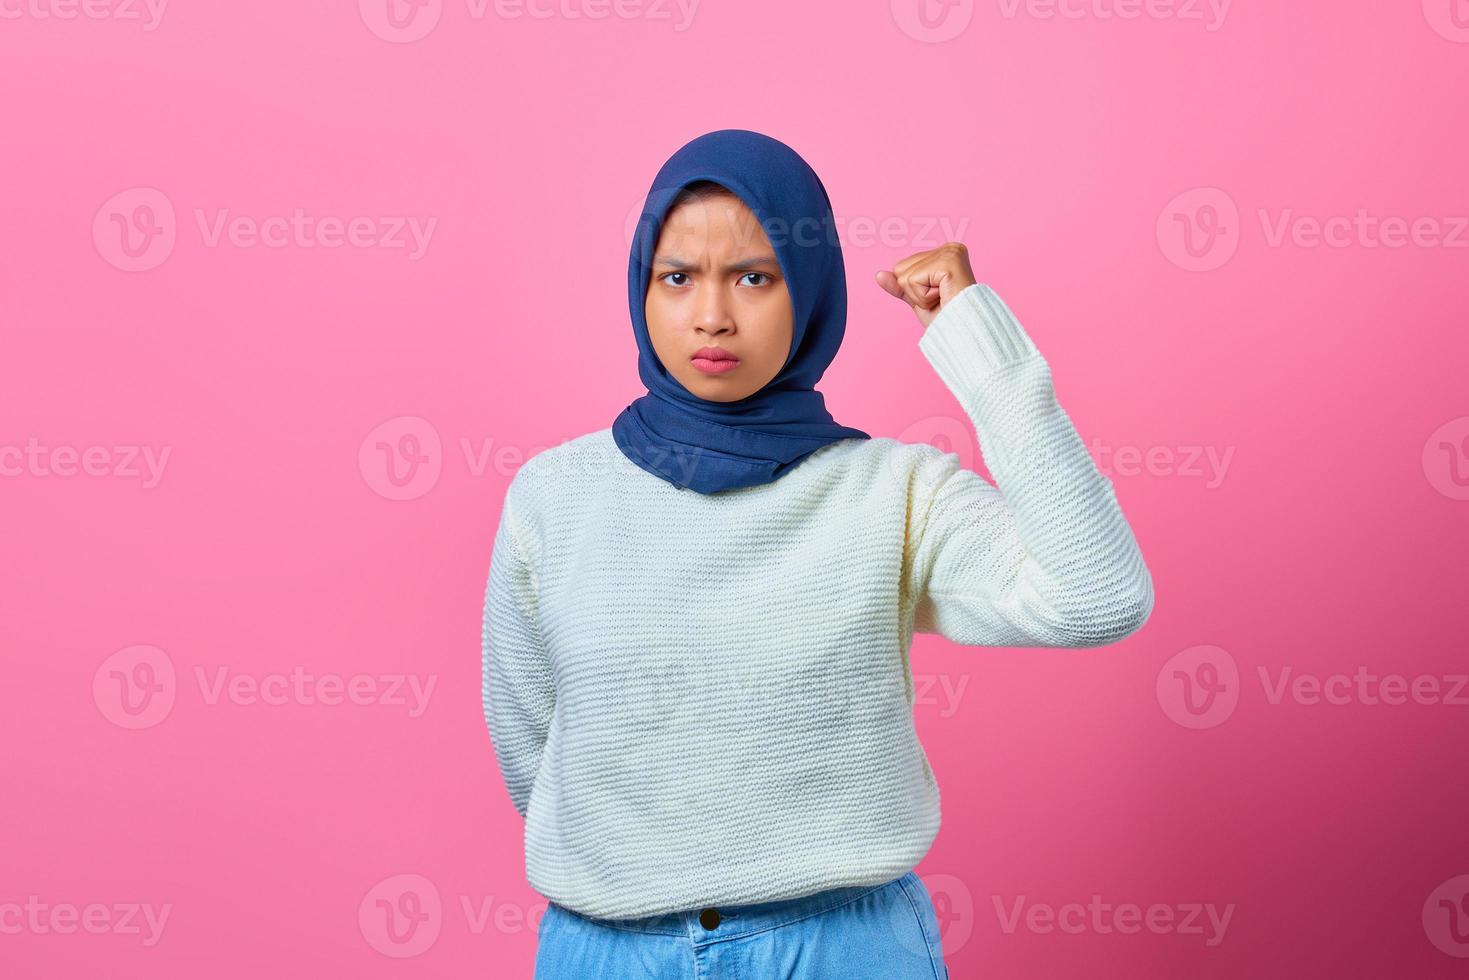 porträtt av den vackra asiatiska kvinnan som höjde handen med arg uttryck foto